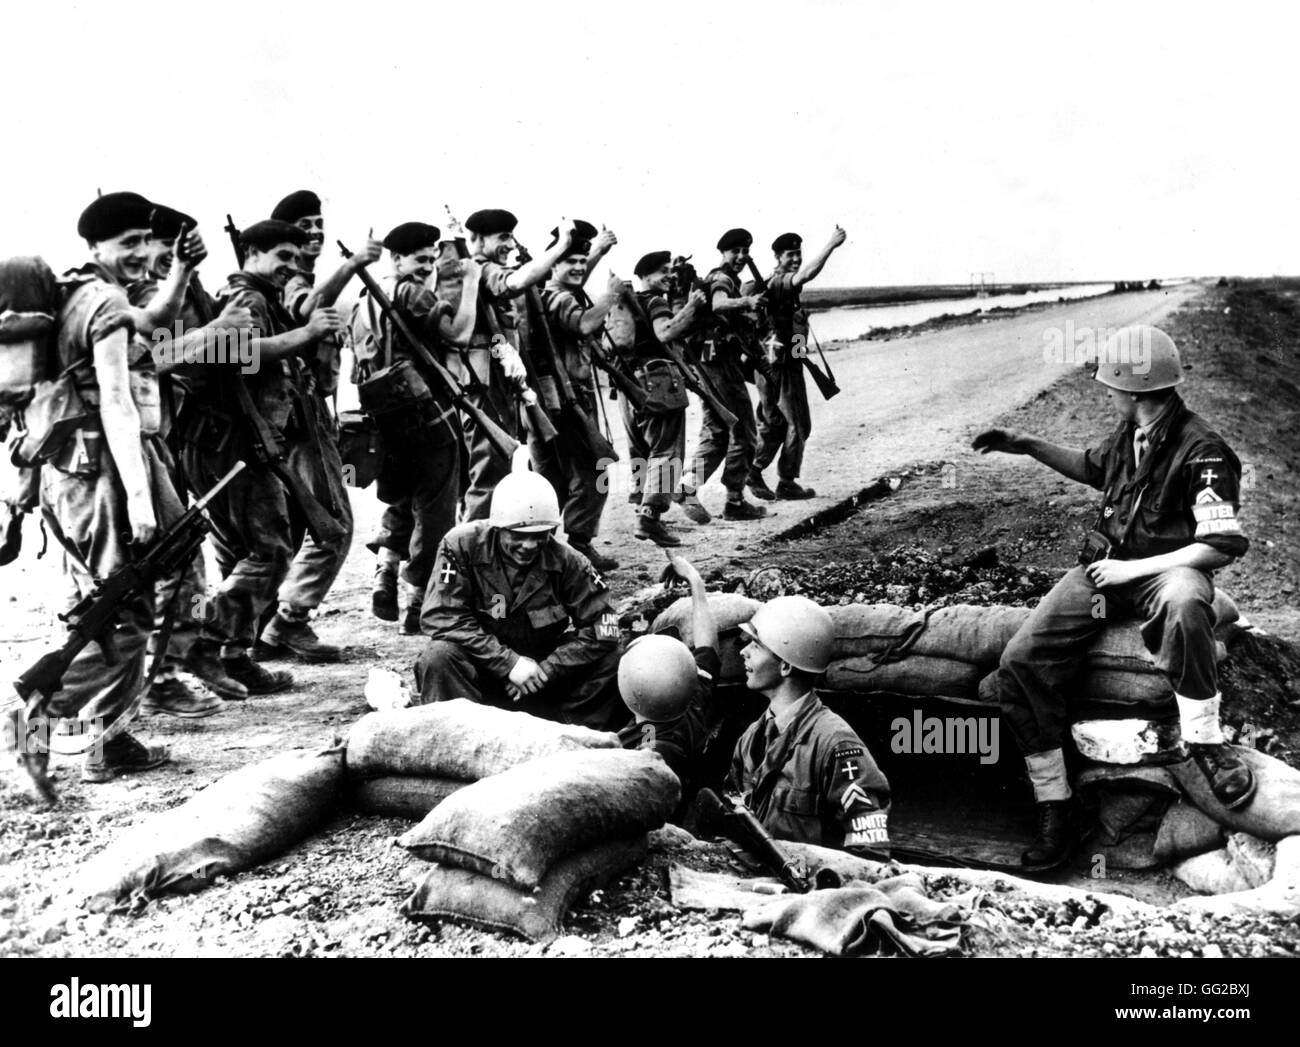 Dänische Truppen intrigieren Streitkräfte übernehmen erweiterte Beiträge, dass britische Einheiten im Bereich Suezkanals 1956 Ägypten - Suez Affäre Washington - Library of Congress verlassen Stockfoto